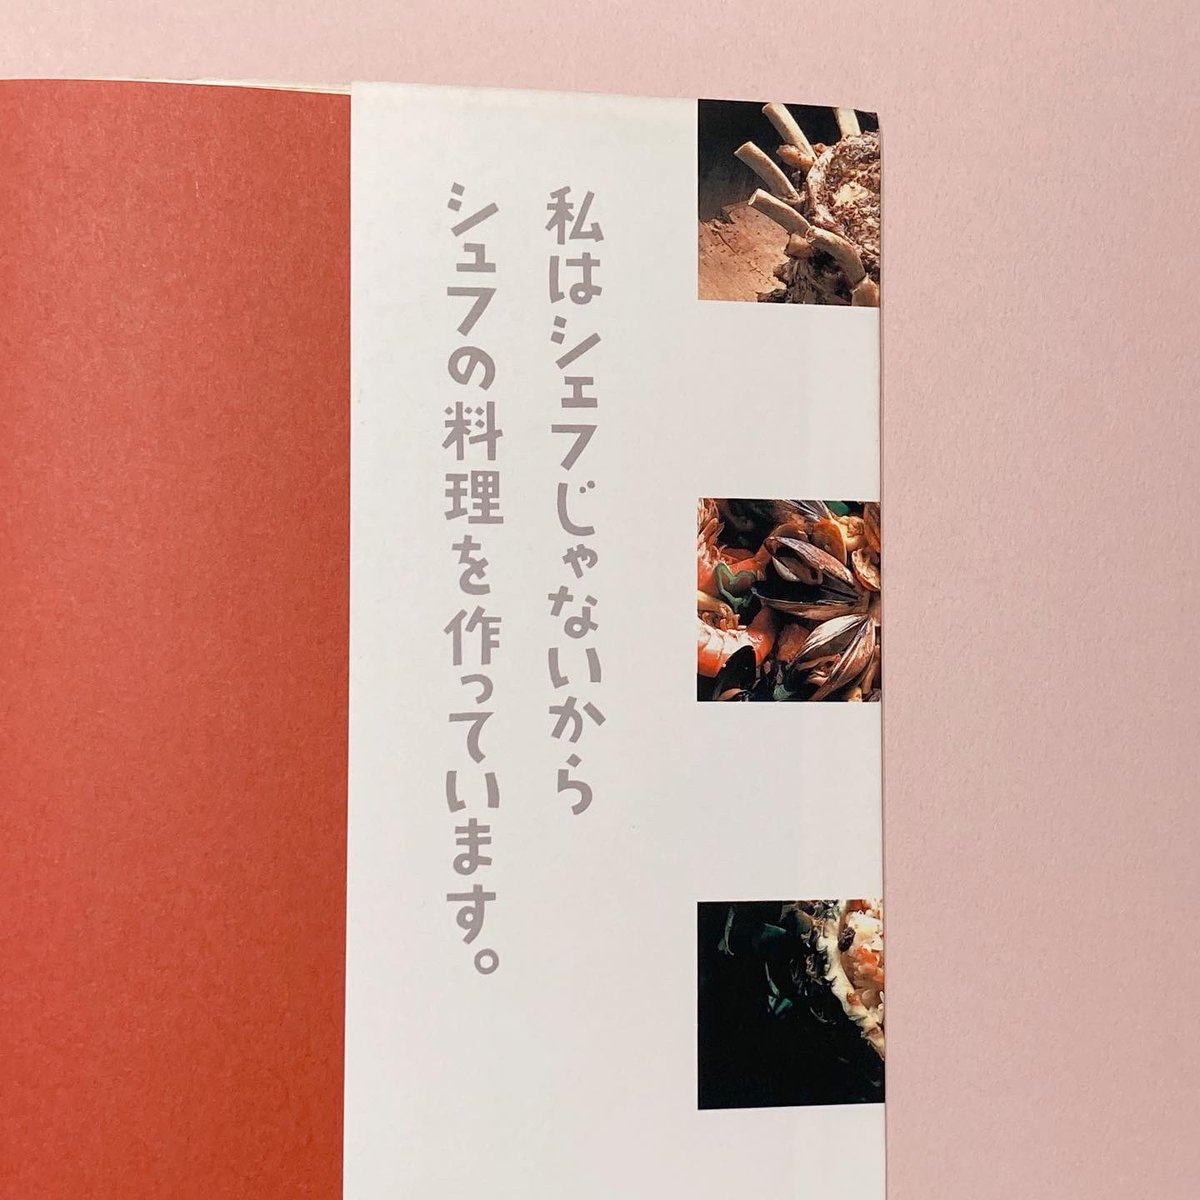 【和田誠の家族との本4】
平野レミさんの著書『平野レミ・料理大全』。和田さんの装丁、そして和田唱さんと和田率さんの挿絵と、家族の皆さんで作り上げた一冊です。 